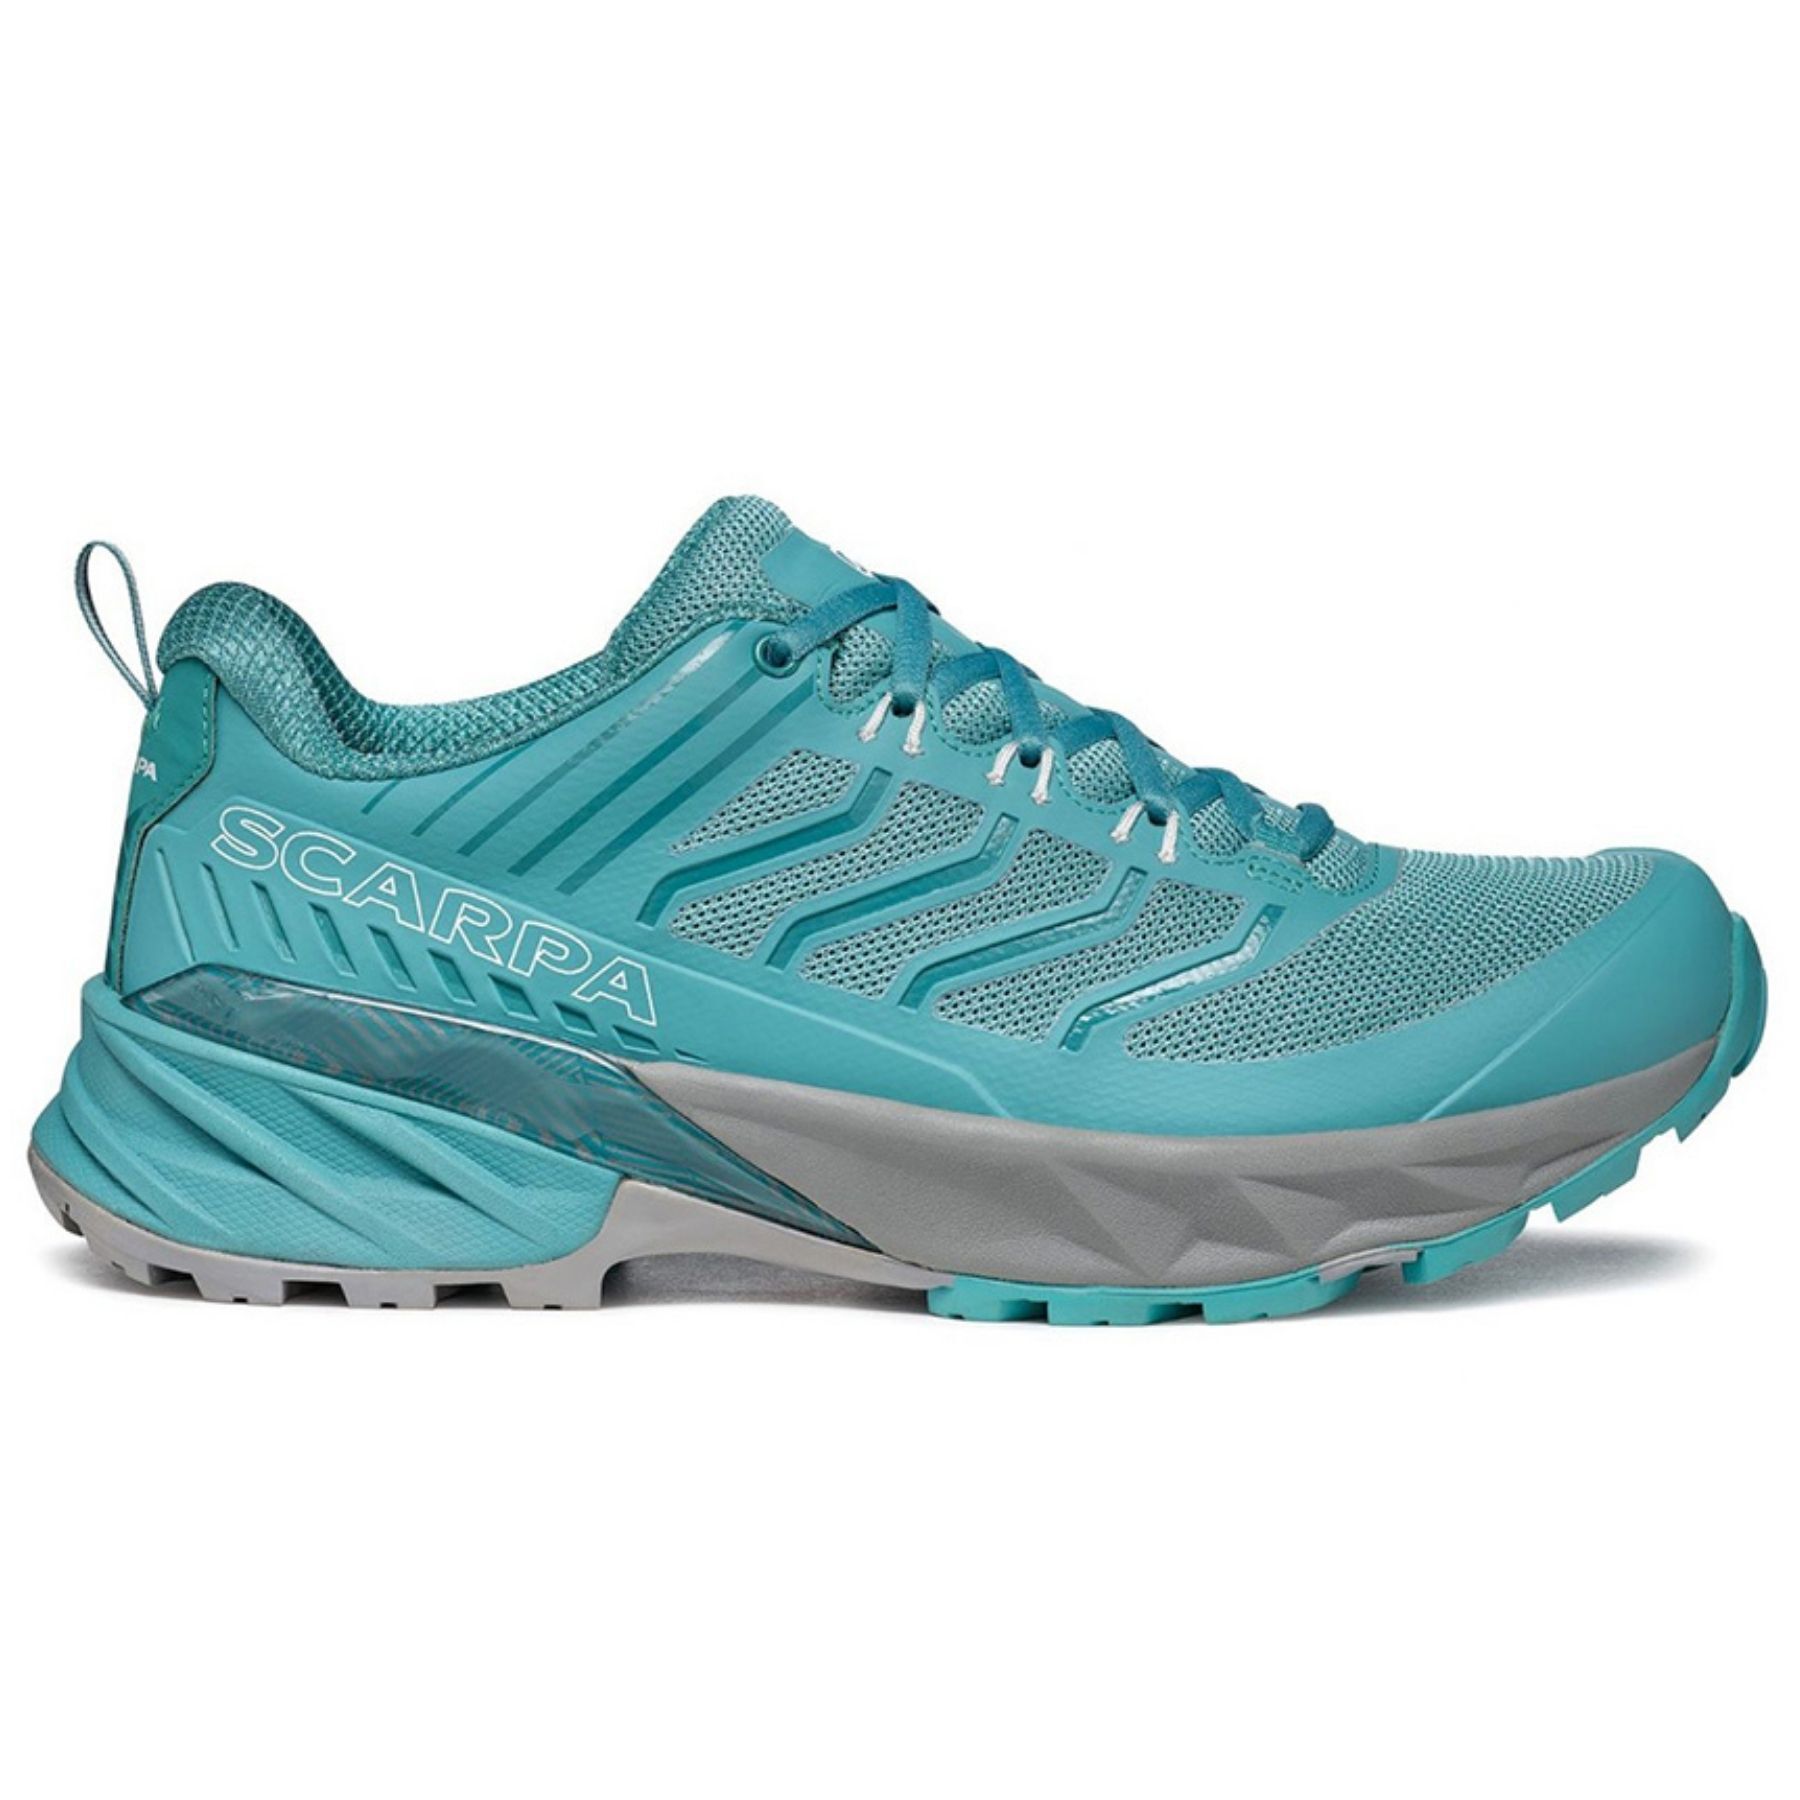 Scarpa Rush Wmn - Trail running shoes - Women's